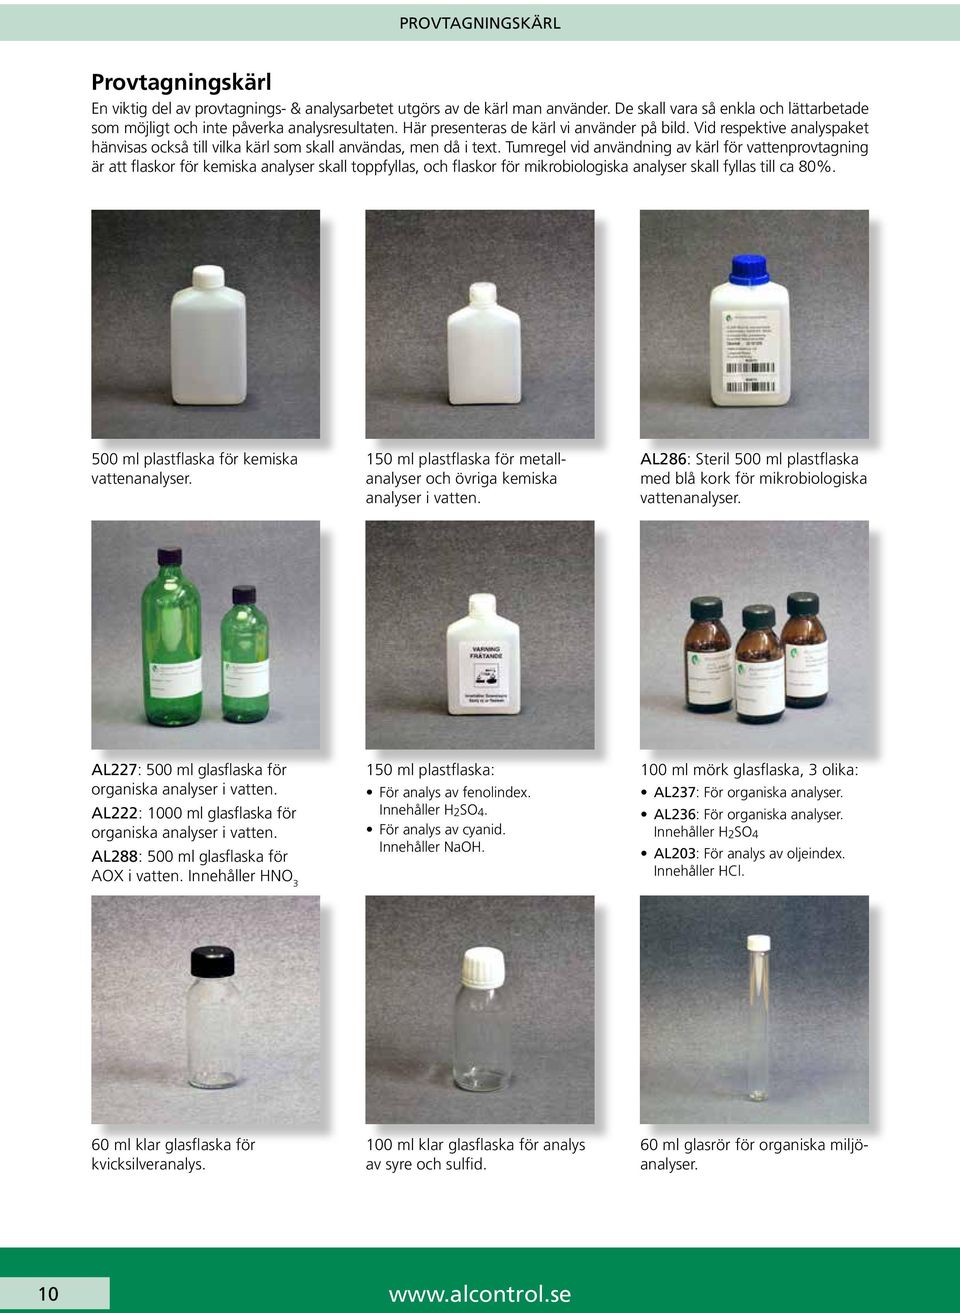 Tumregel vid användning av kärl för vattenprovtagning är att flaskor för kemiska analyser skall toppfyllas, och flaskor för mikrobiologiska analyser skall fyllas till ca 80%.